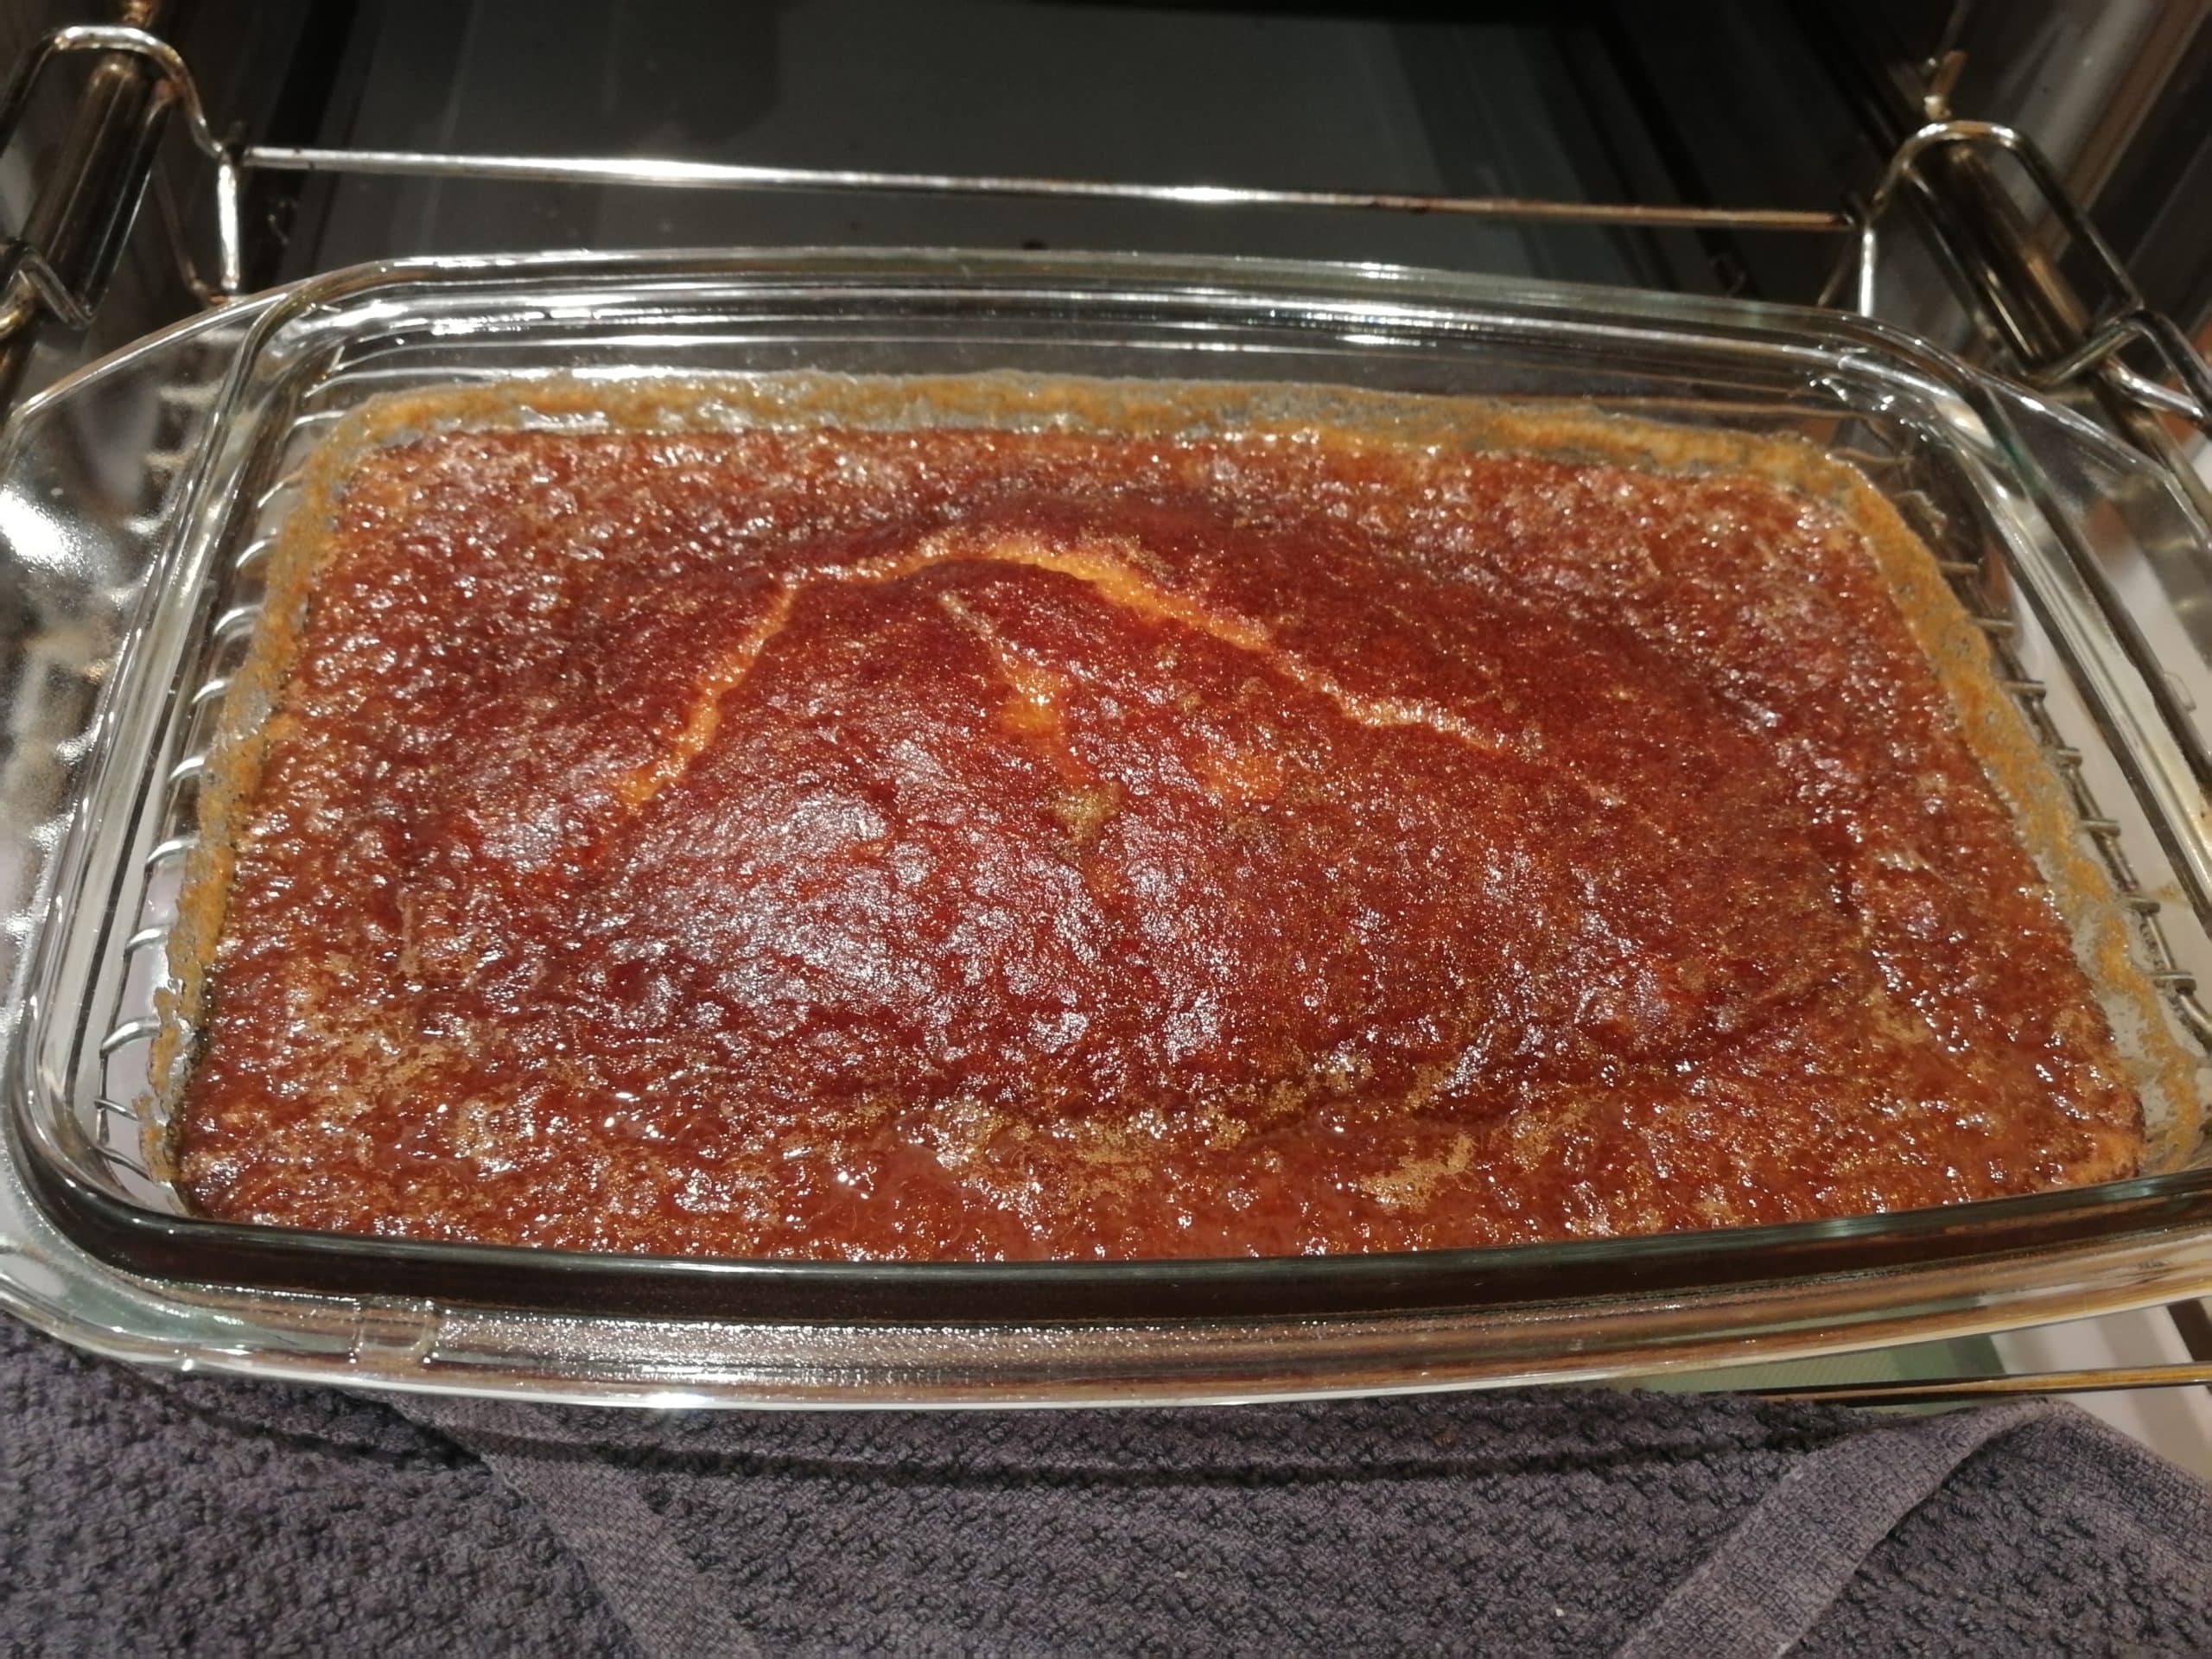 Ein Bild von einem perfekt gebackenen Malva Pudding in einer Auflaufform, mit einer wunderschönen, karamellisierten, dunkelbraunen Oberfläche, nachdem er den köstlichen Sirup aufgesogen hat.